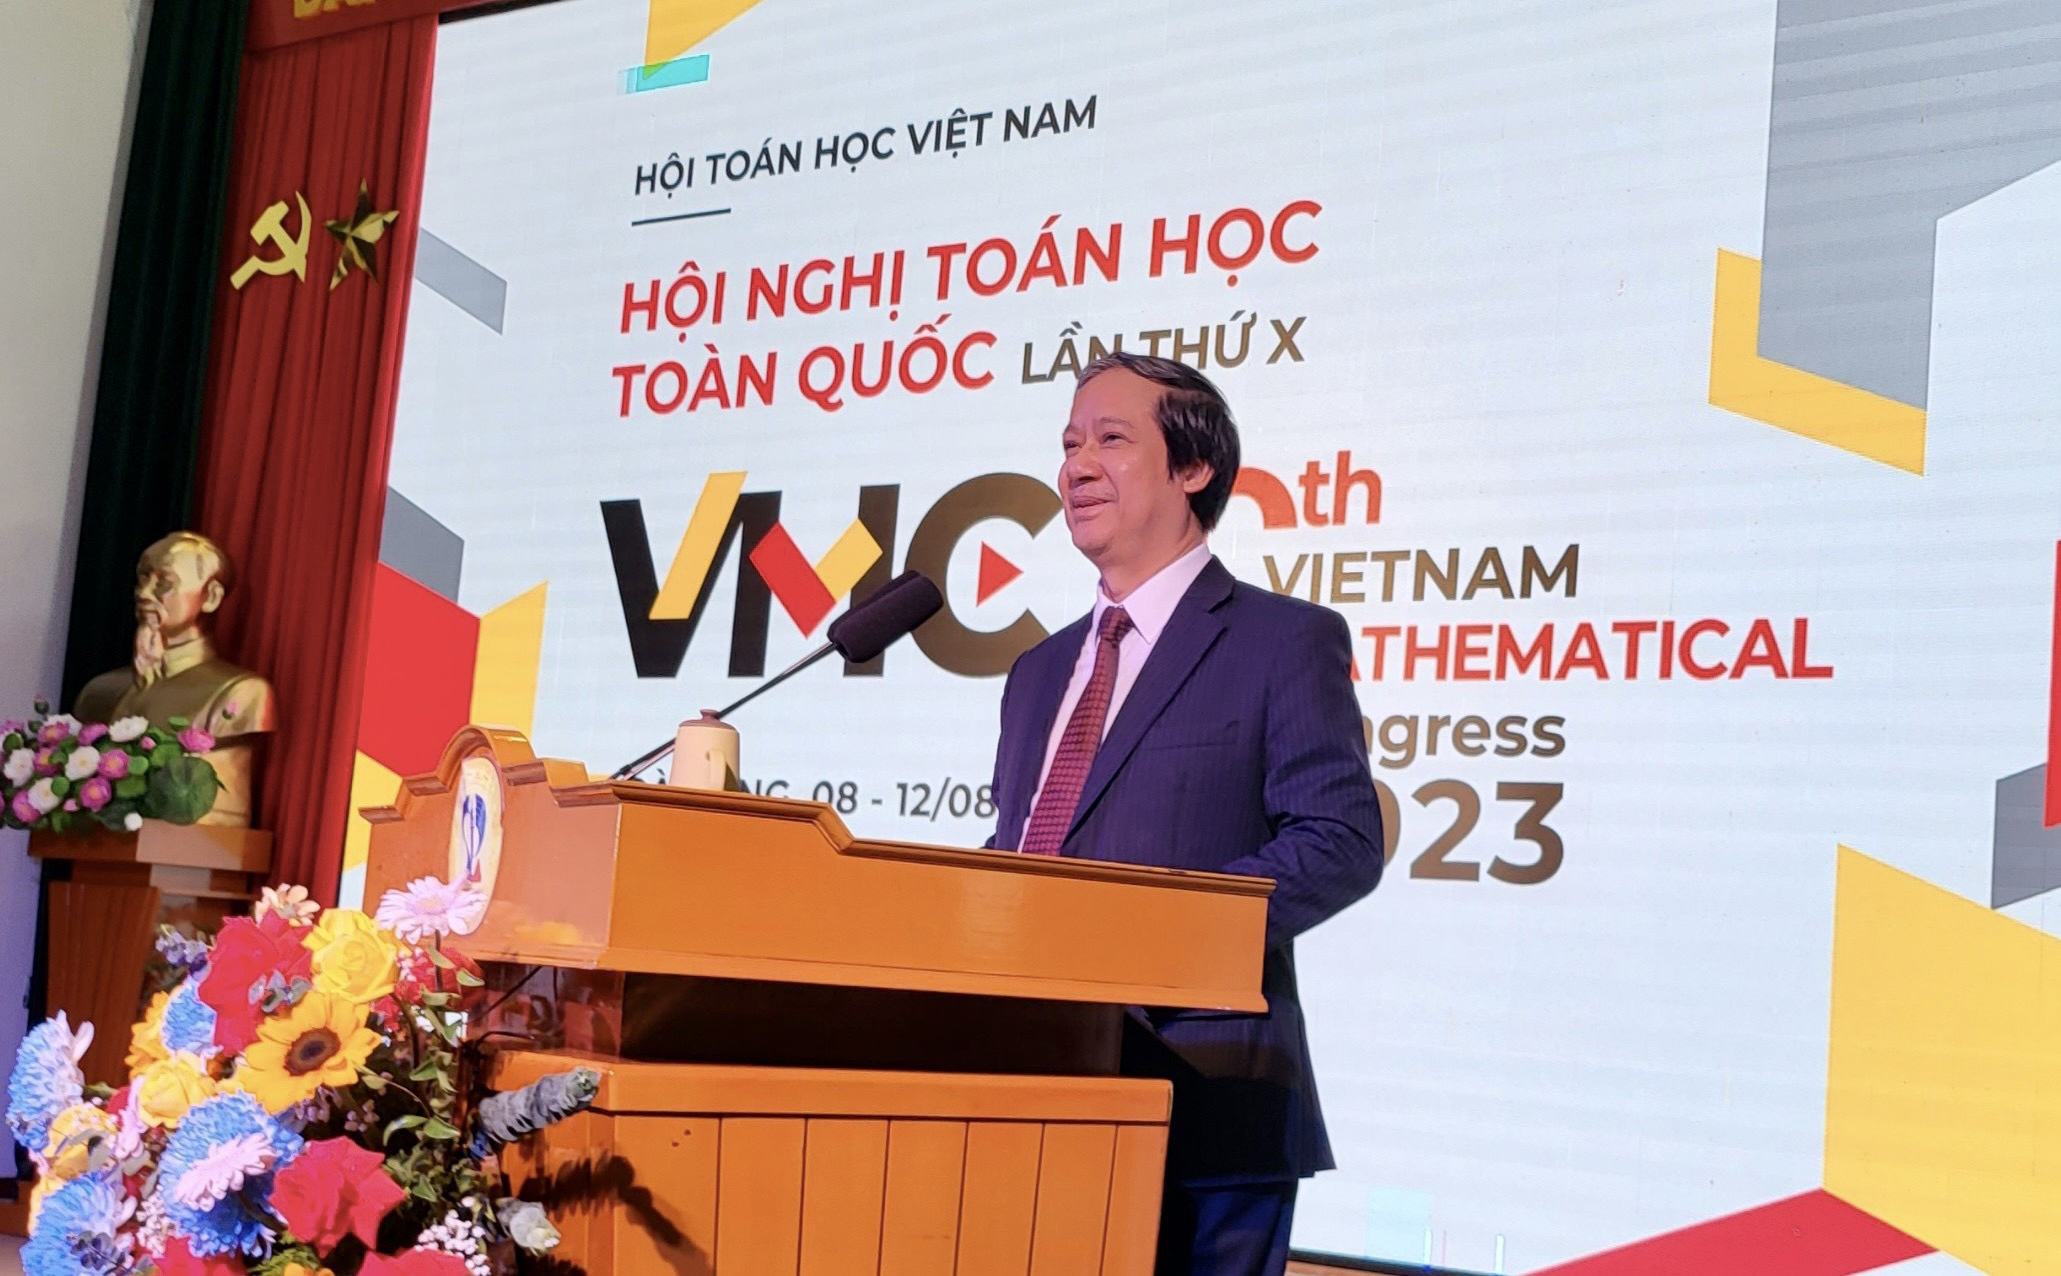 Bộ trưởng Bộ GD&ĐT Nguyễn Kim Sơn phát biểu khai mạc tại Hội nghị Toán học toàn quốc lần thứ X.